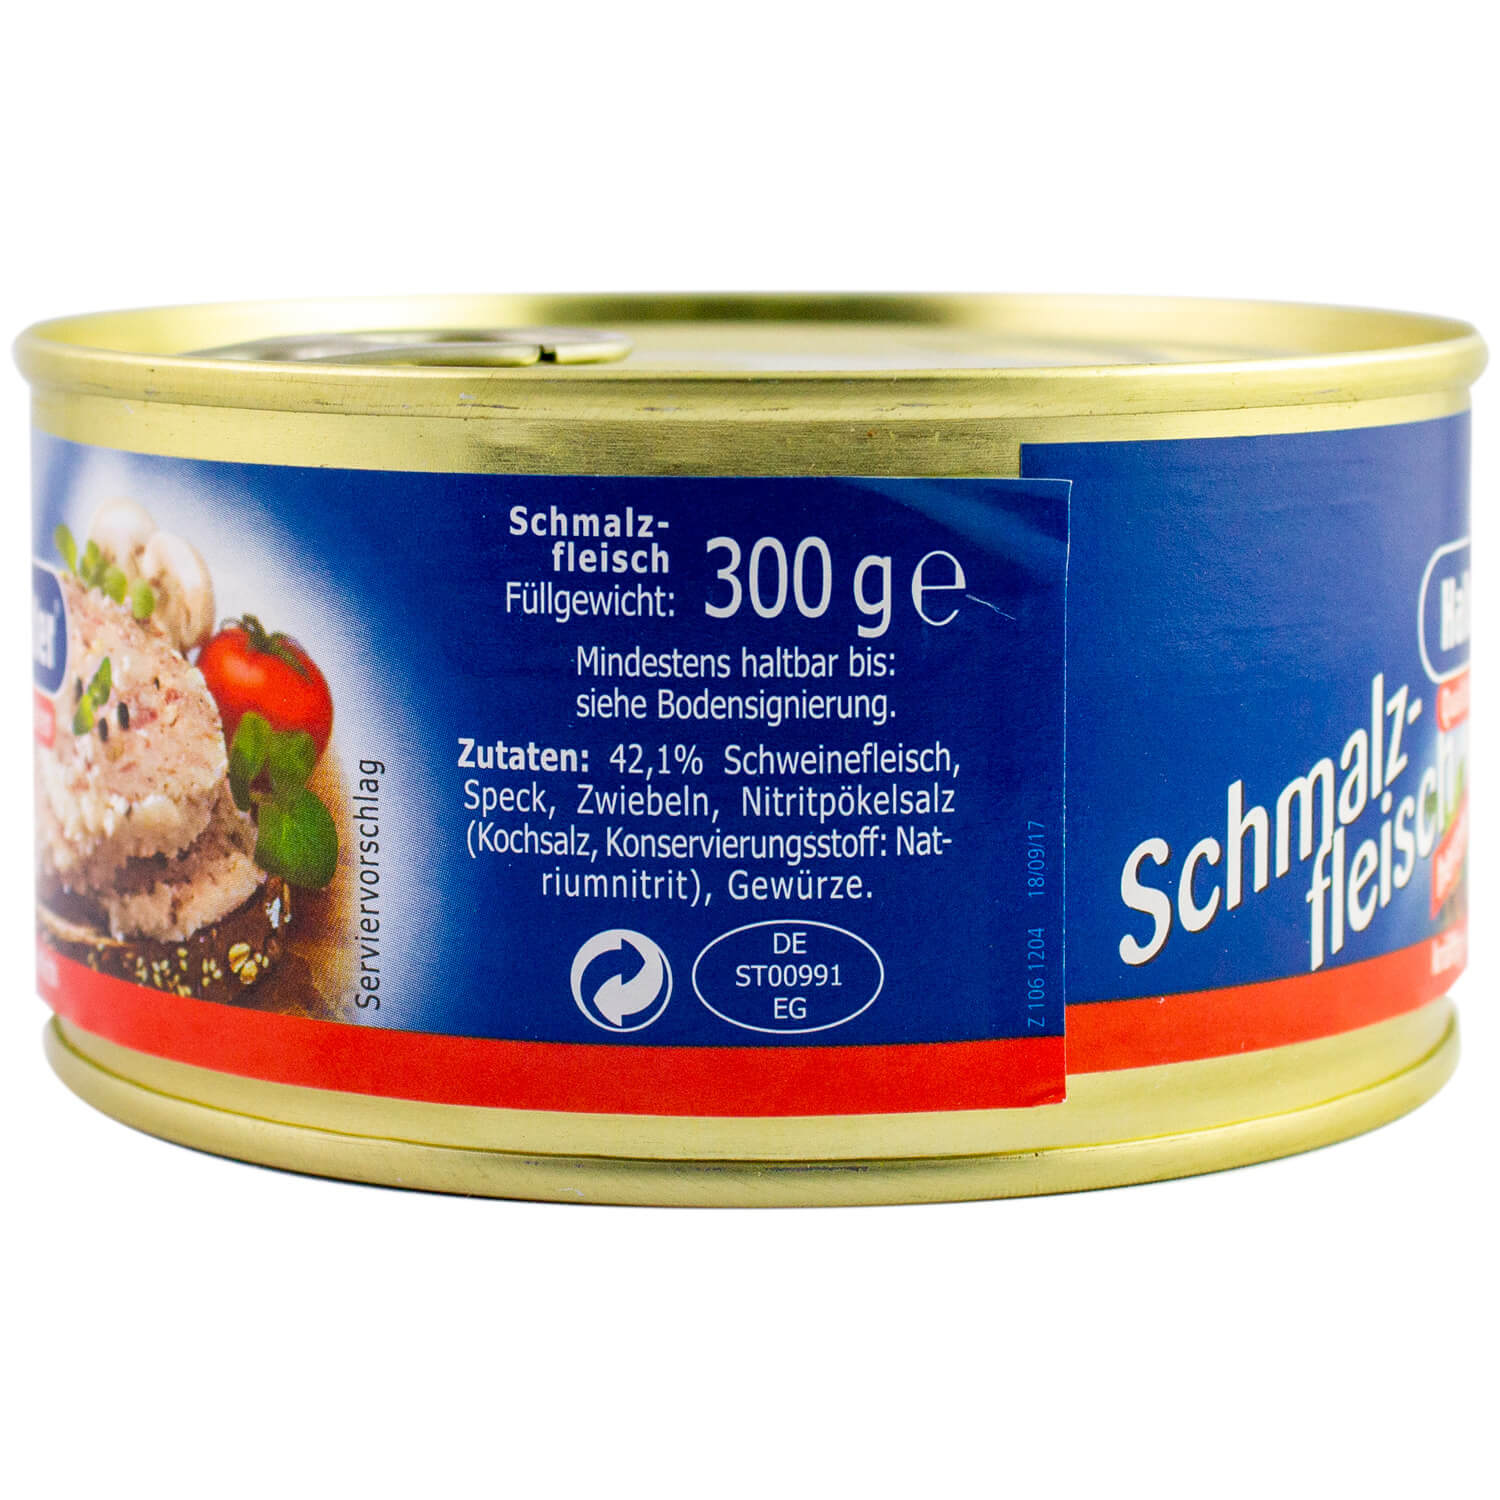 Ossikiste.de | Halberstädter Schmalzfleisch 300g | online kaufen